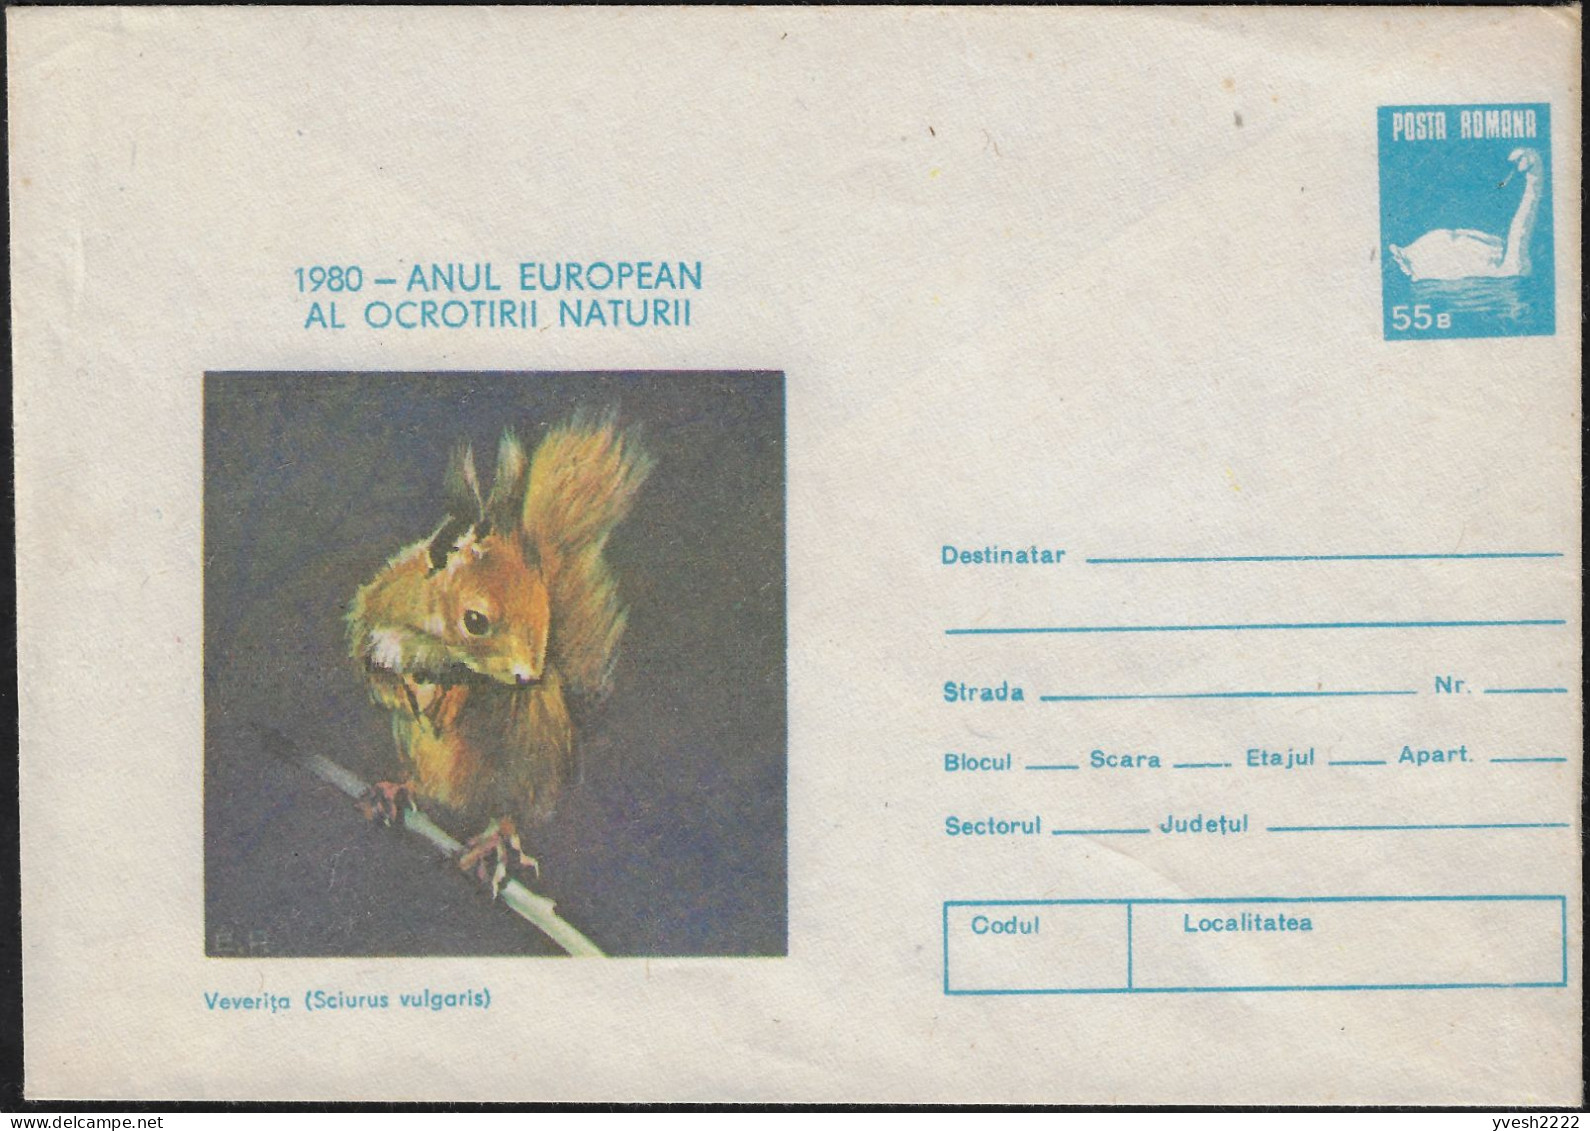 Roumanie 1980. Entier Postal, Année Européenne De La Protection De La Nature. Écureuil, Cygne - Rodents